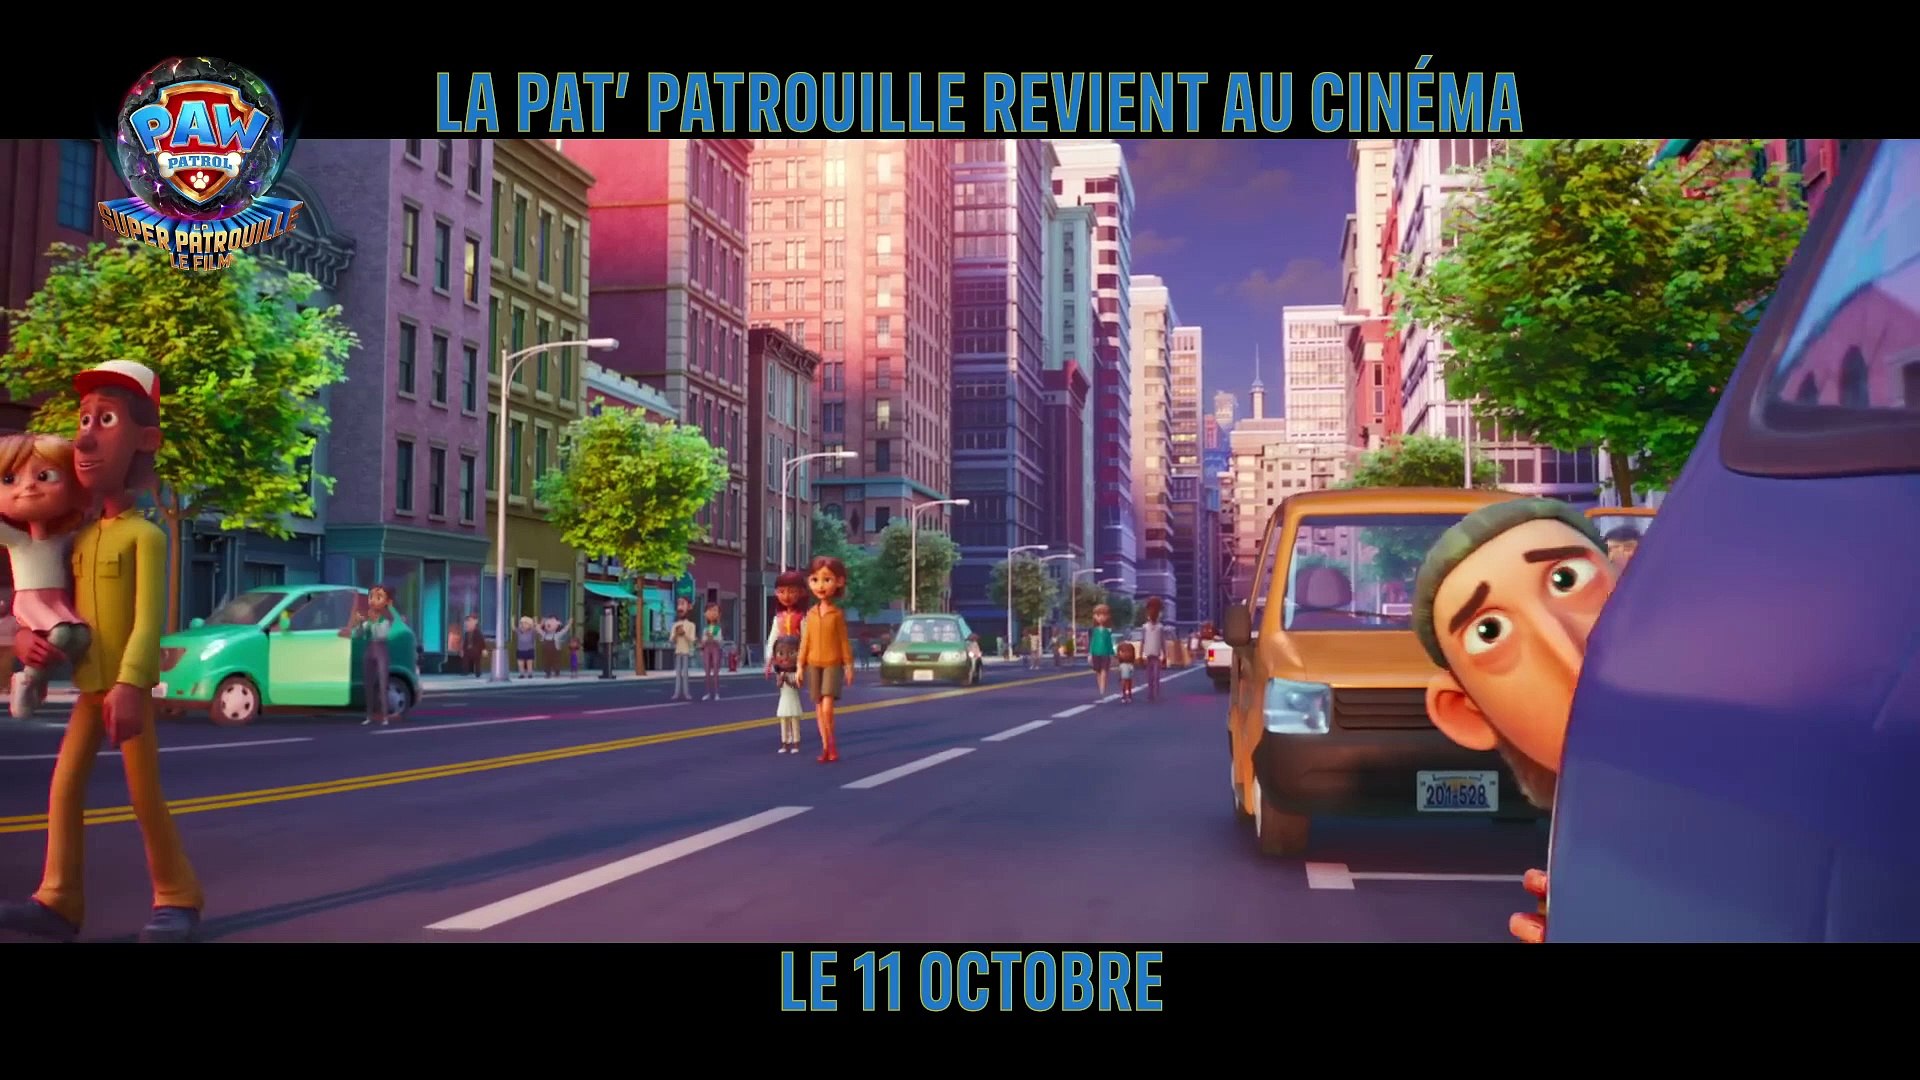 La Pat' Patrouille : La Super Patrouille Le Film